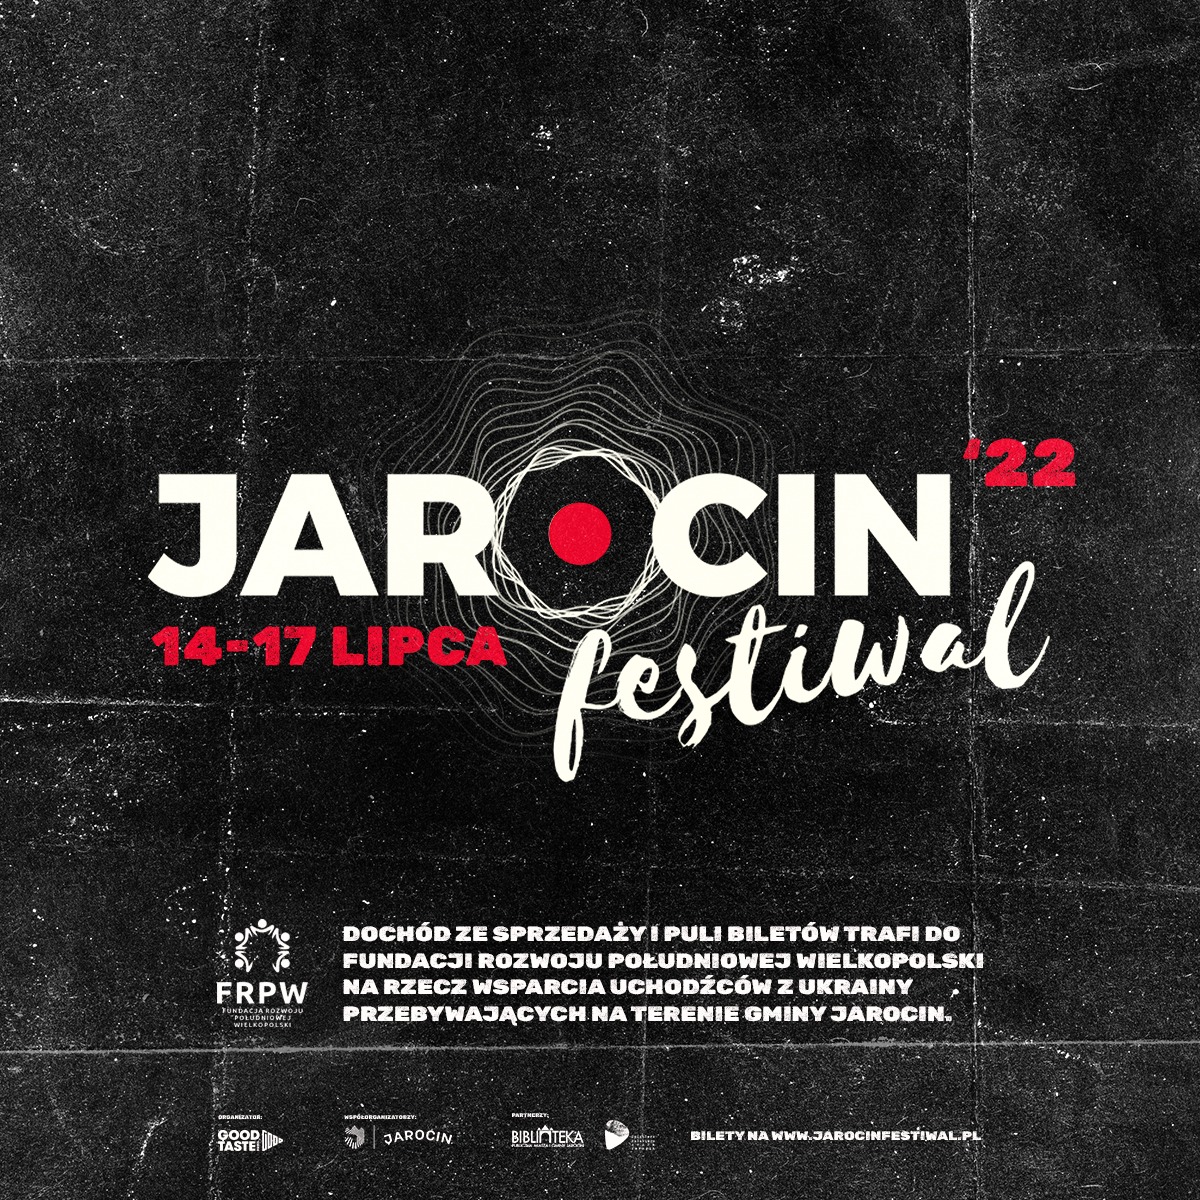 Jarocin Festiwal 2022 – znamy pierwsze szczegóły!